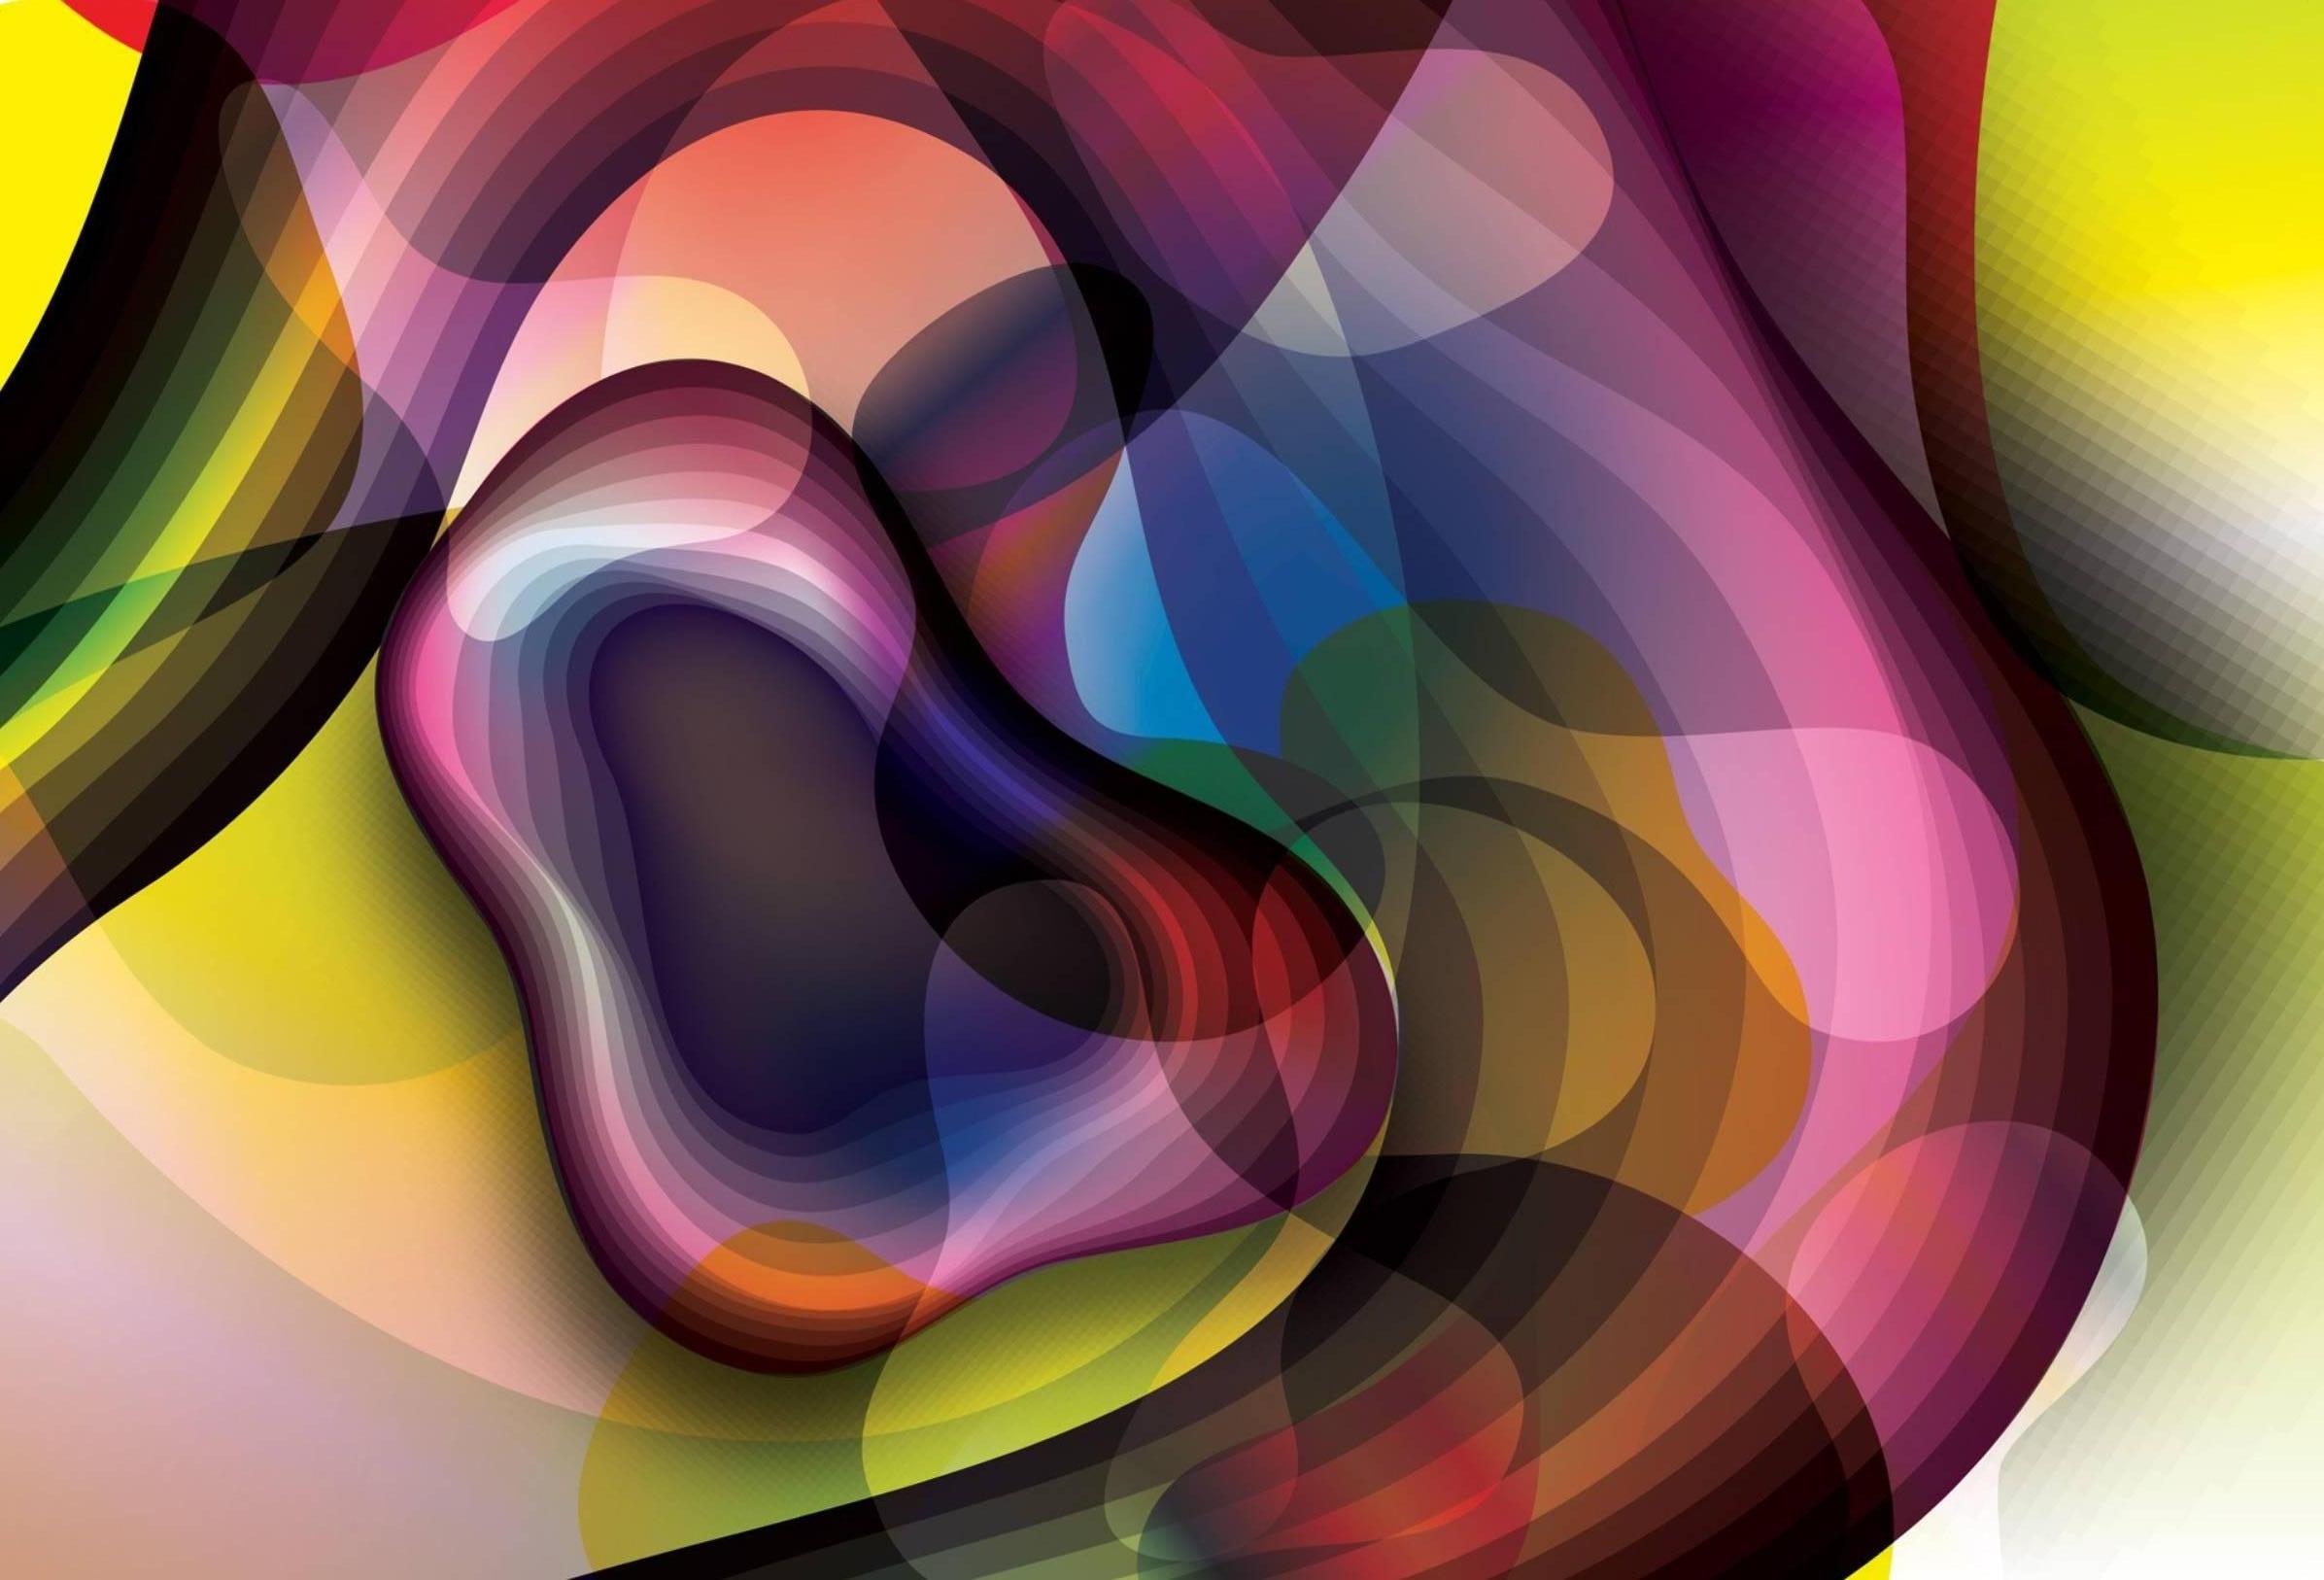 Karim Rashid Abstract Print - "Blobular 3" - Digital Print